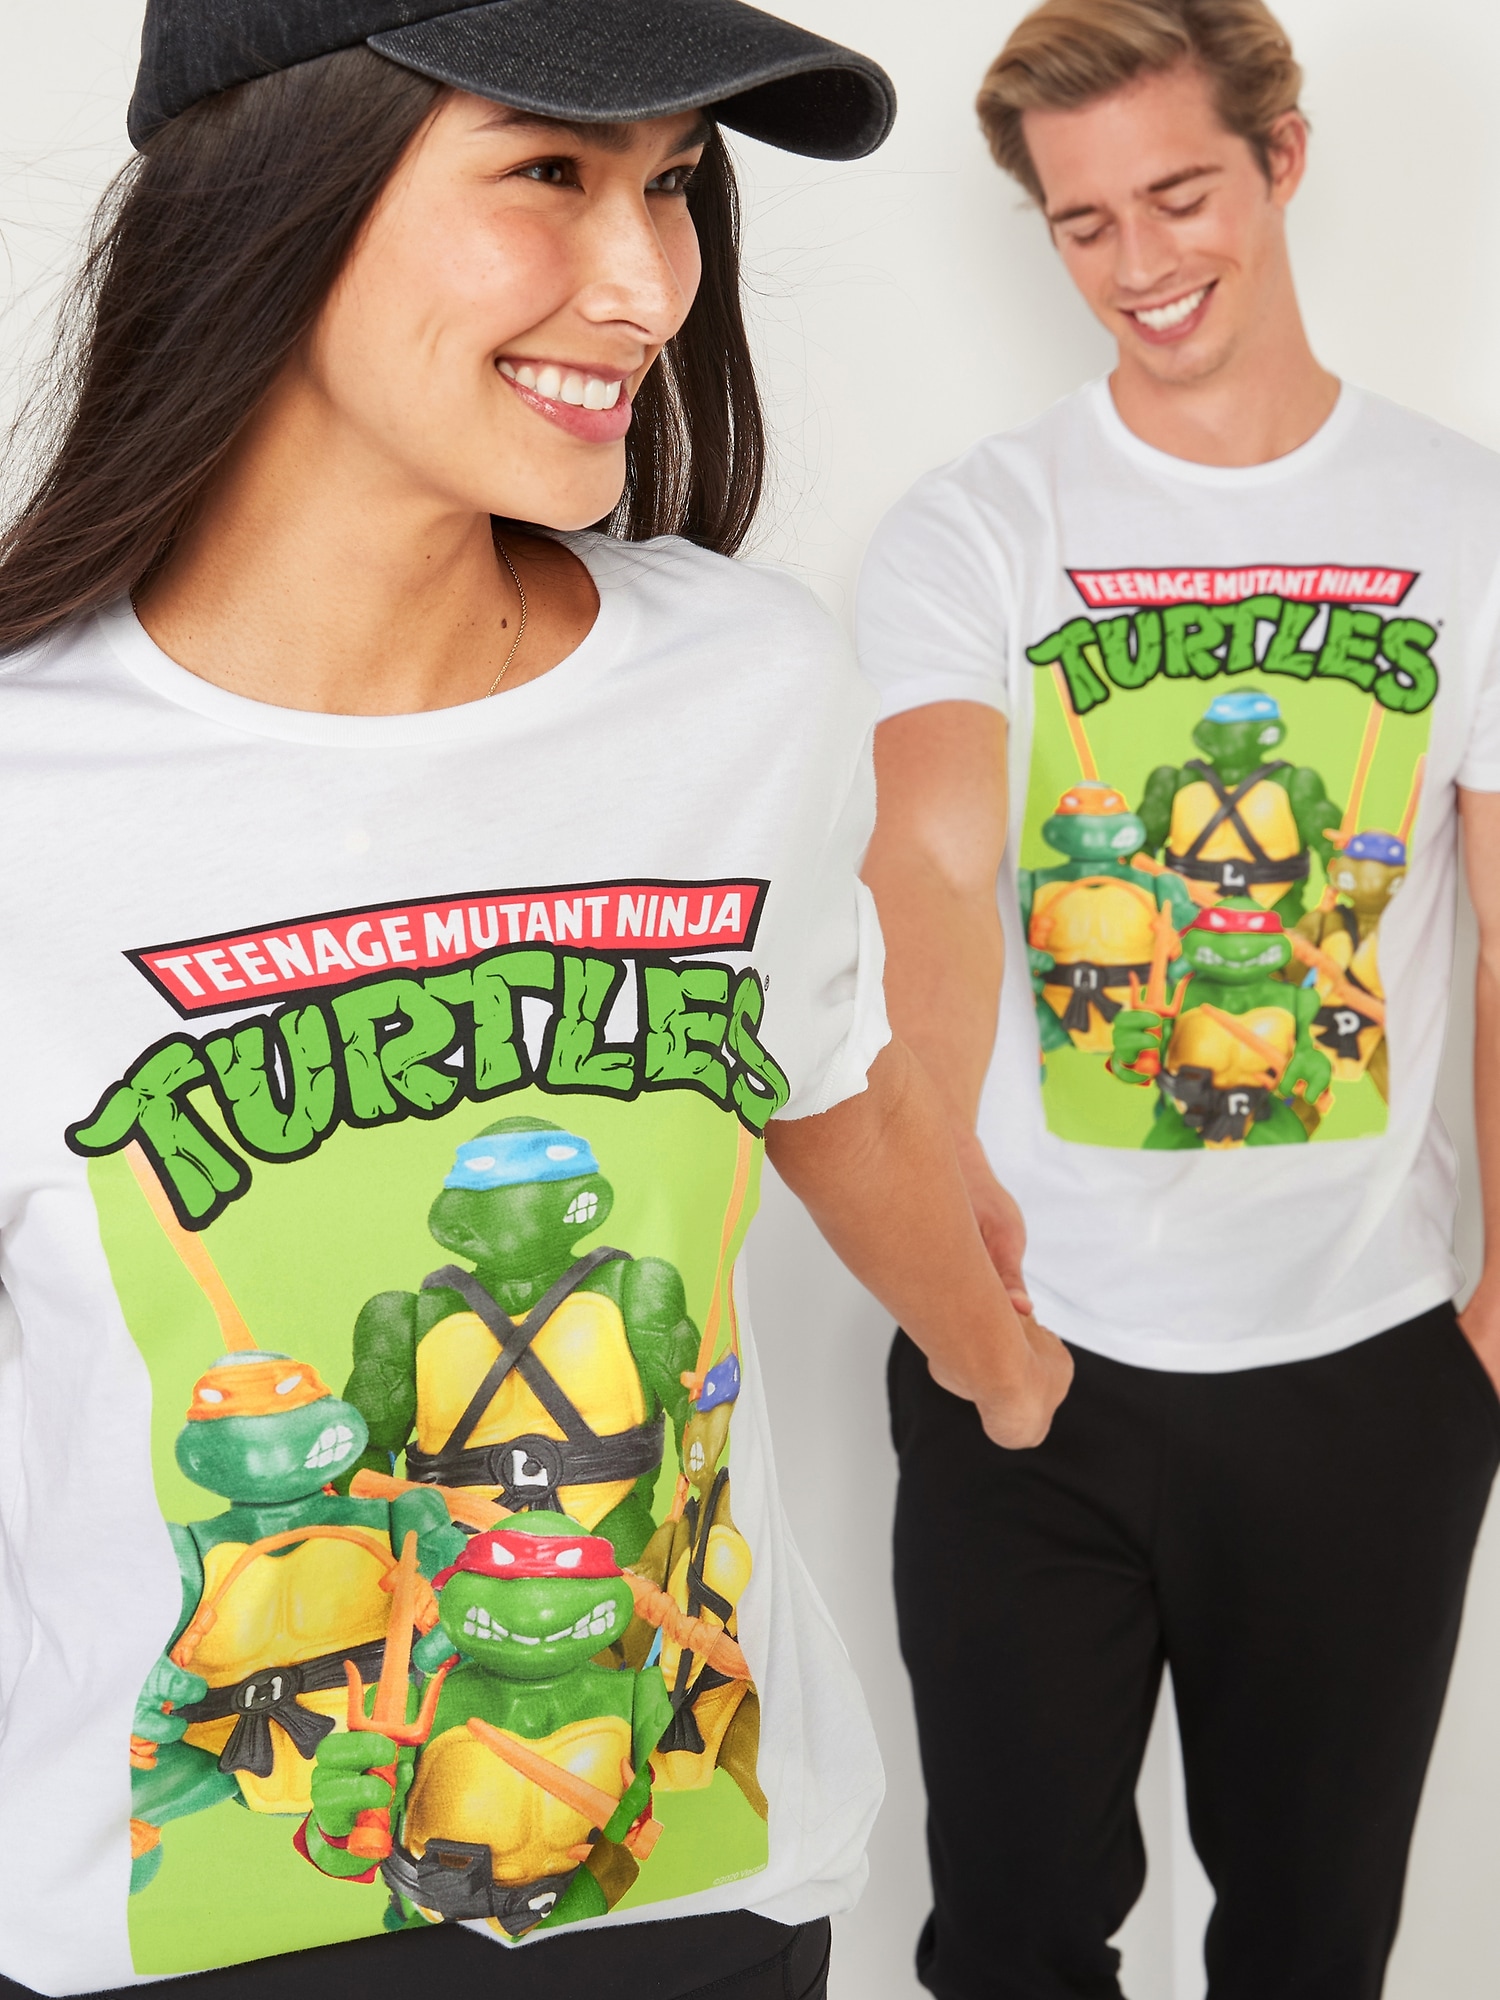 Teenage Mutant Ninja Turtles Baseball Tee